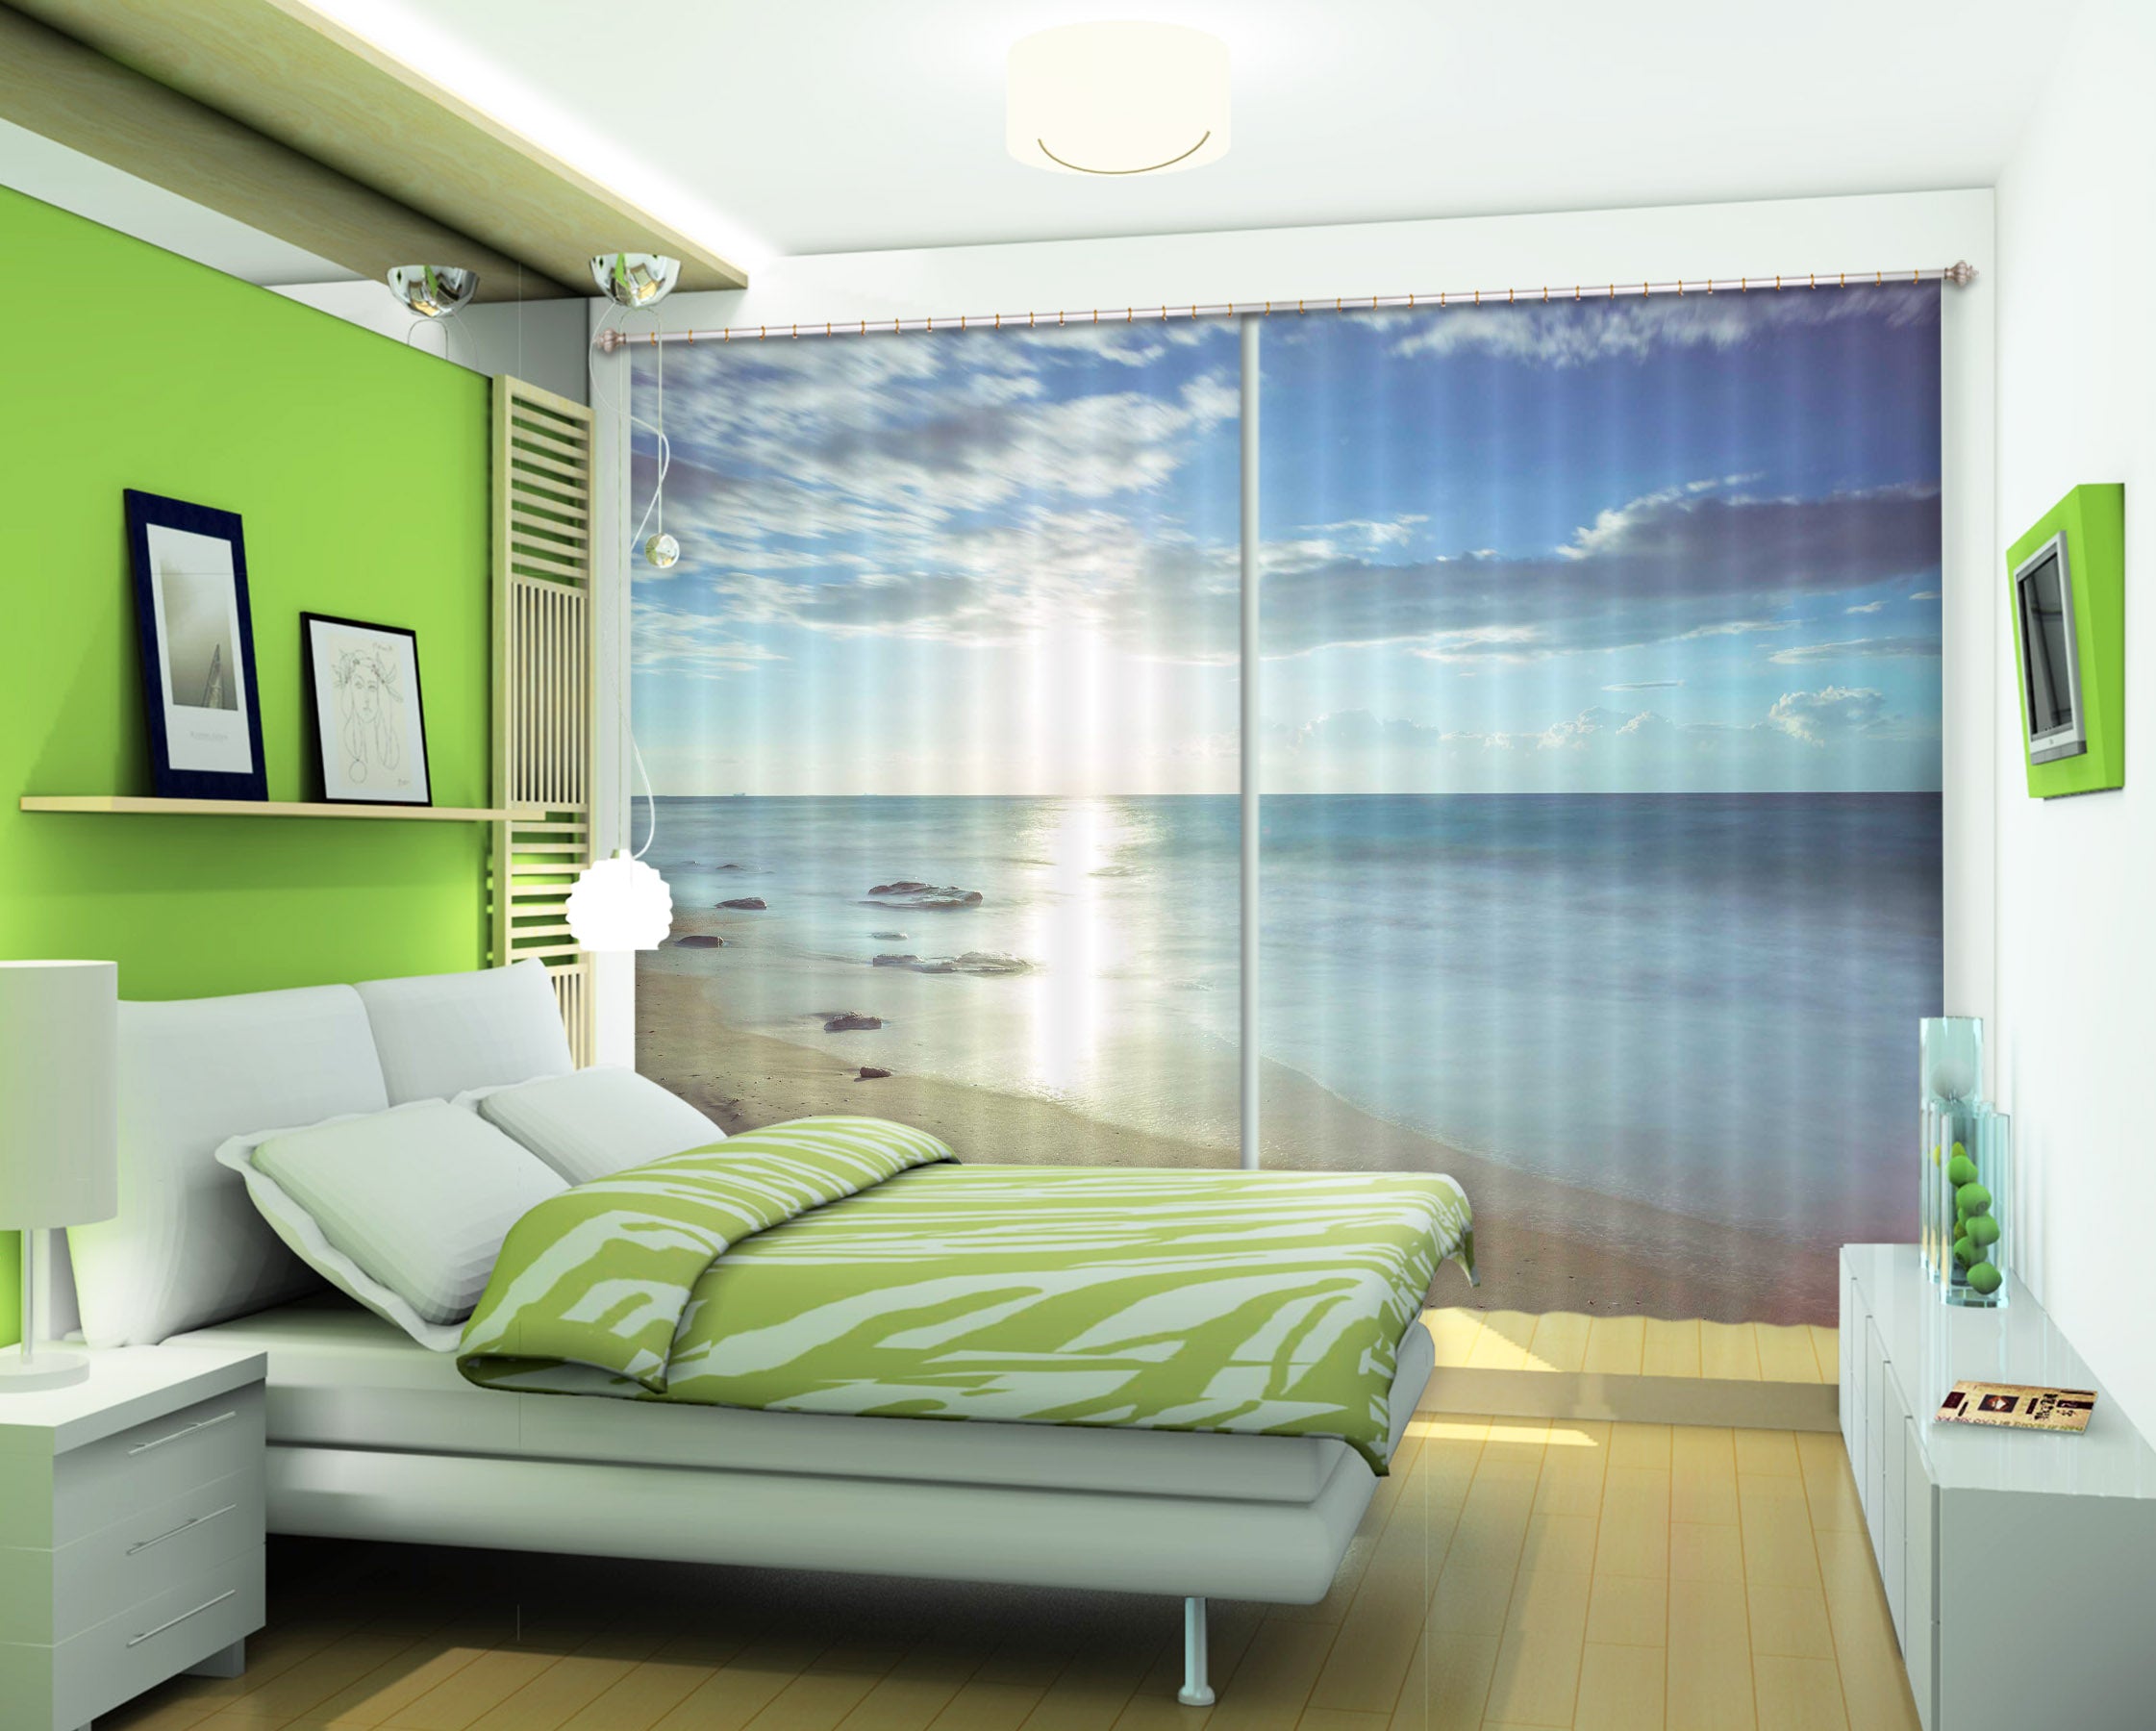 3D Sunny Sea 231 Assaf Frank Curtain Curtains Drapes